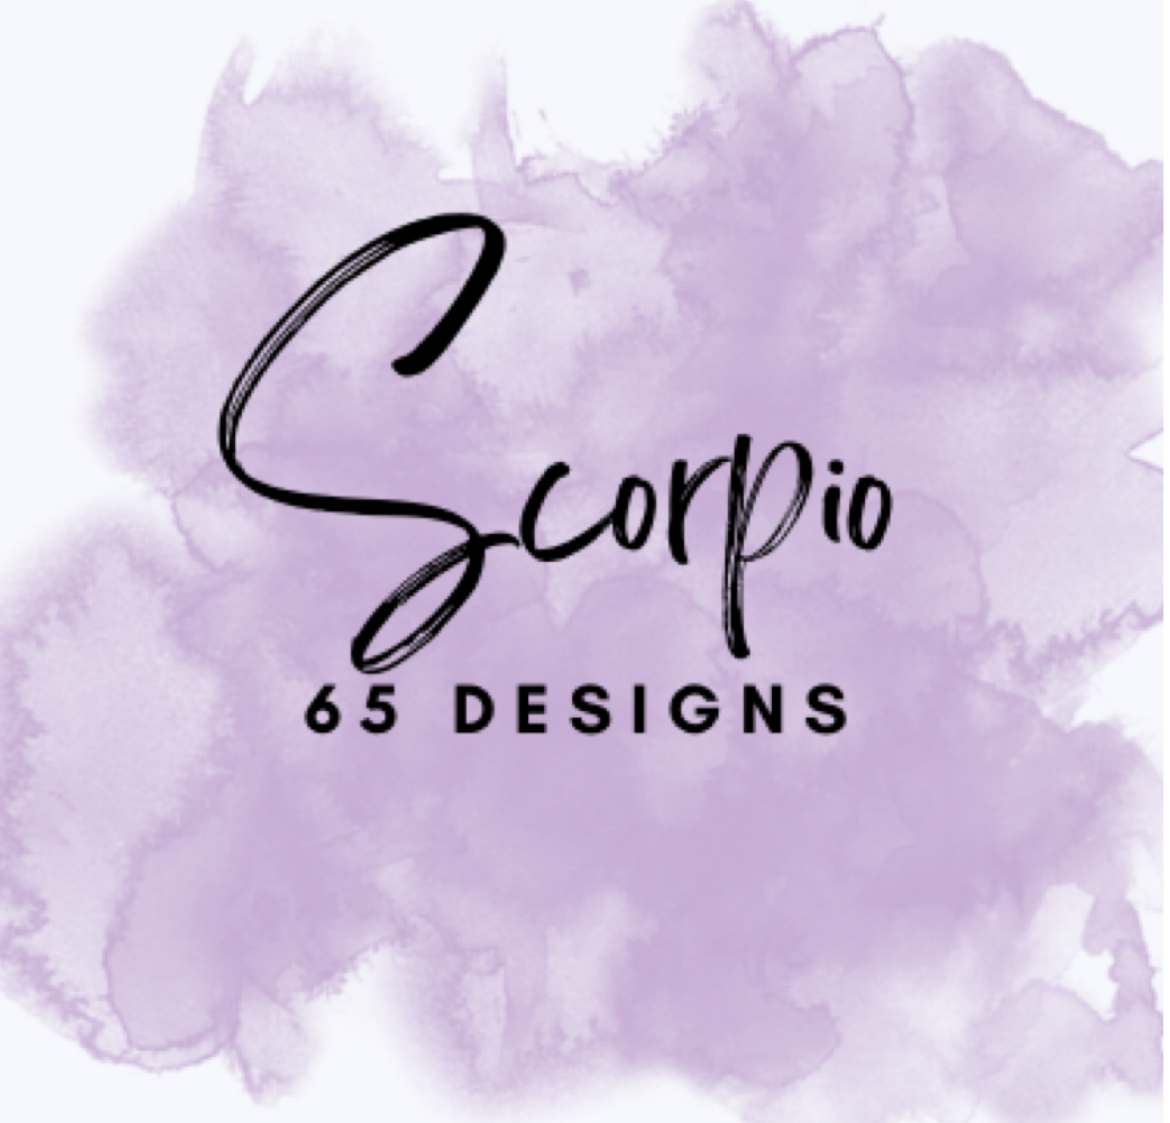 Scorpio 65 Designs